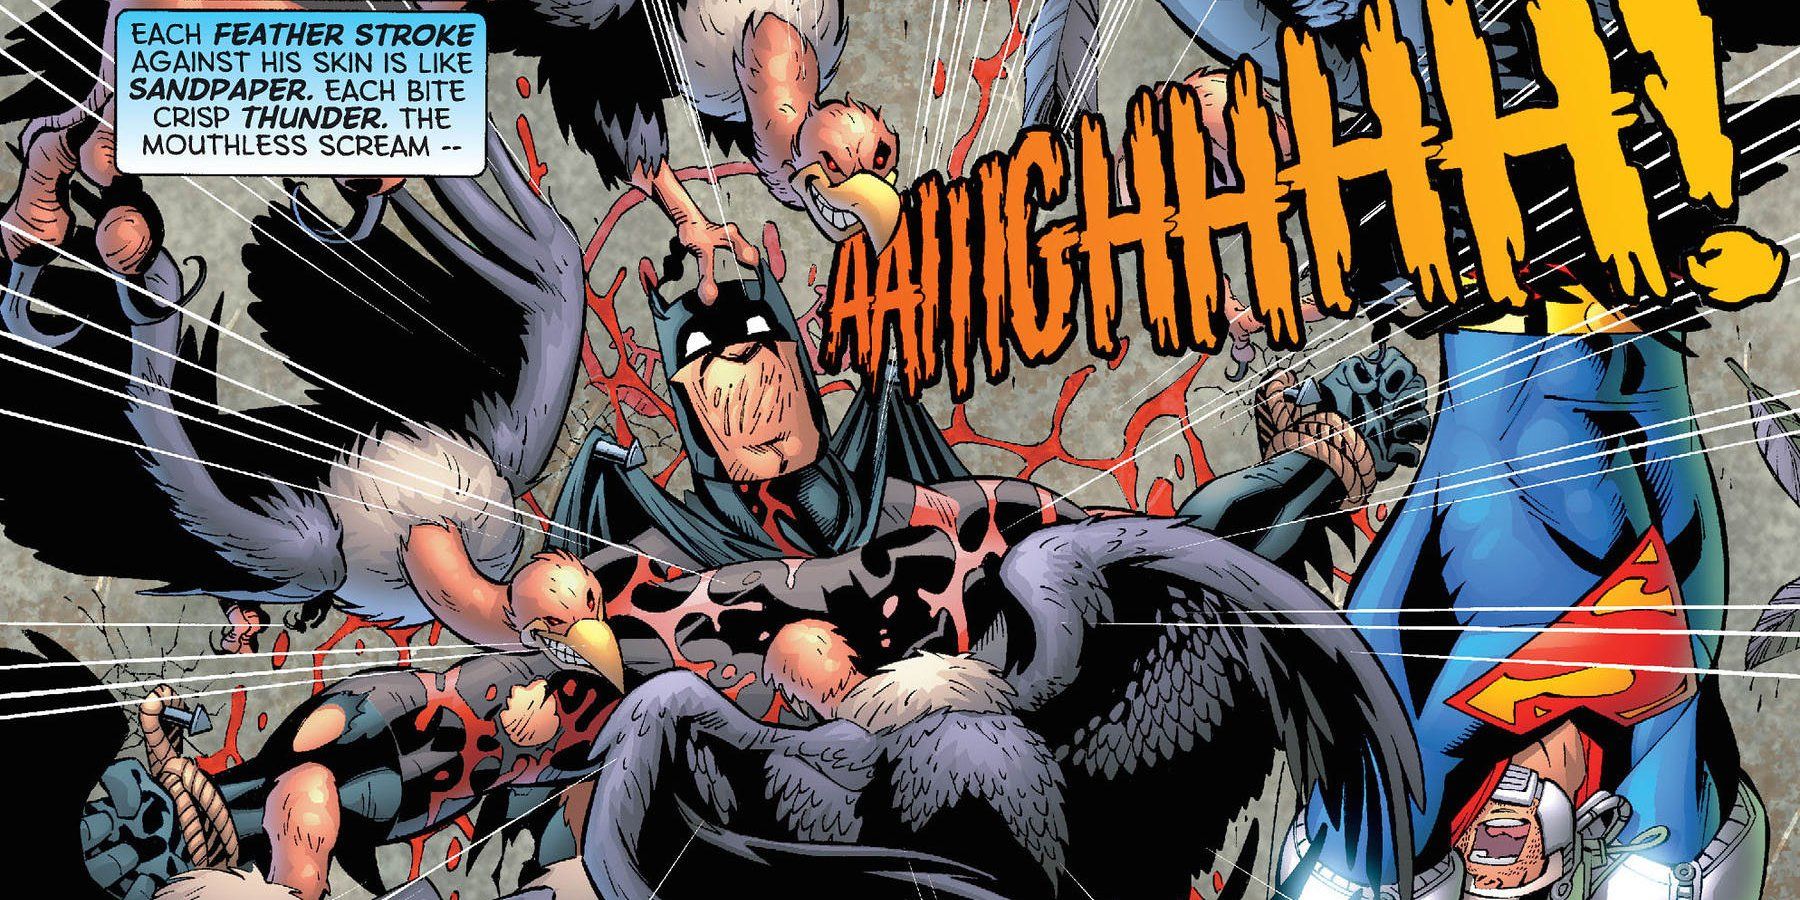 Emperor Joker kills Batman in DC Comics.